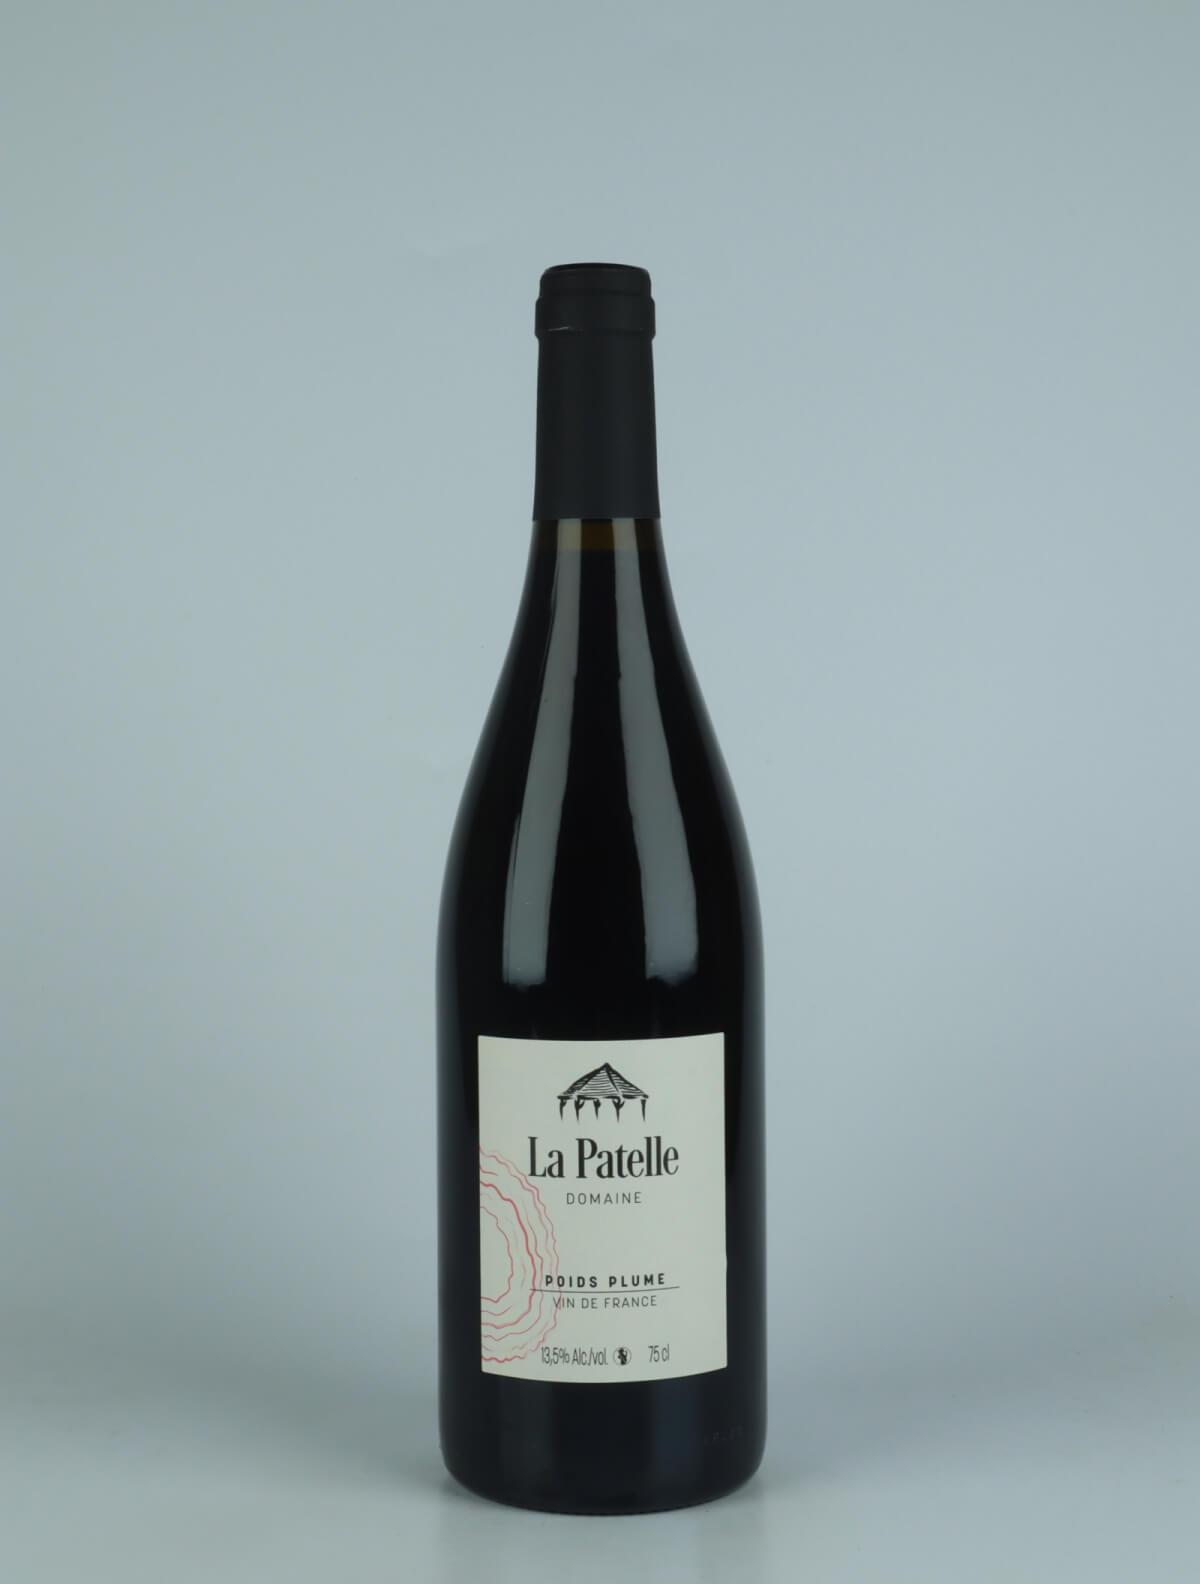 A bottle 2022 Poids Plume - Poulsard Red wine from Domaine de La Patelle, Jura in France